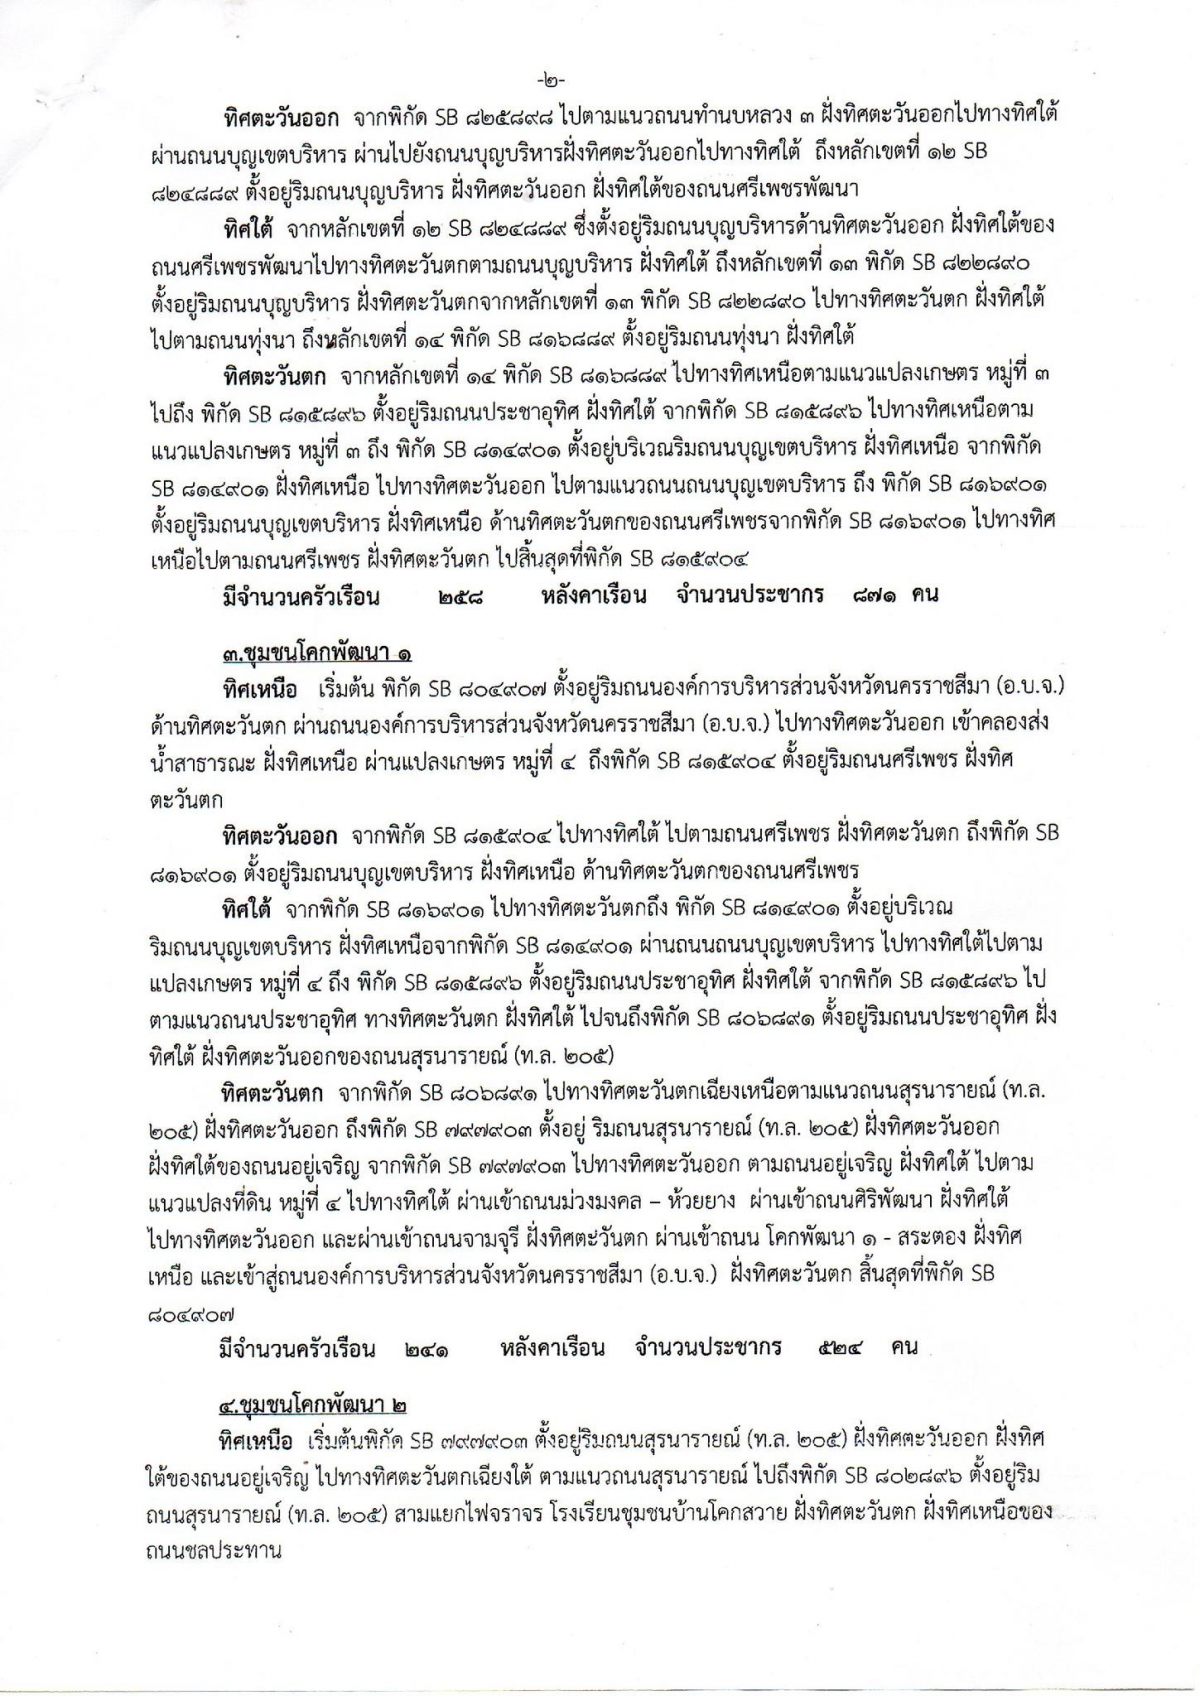 ประชาสัมพันธ์ ประกาศเทศบาลตำบลโคกสวาย เรื่องการจัดตั้งชุมชน อาศัยอำนาจตามความในข้อ 5 แห่งระเบียบกระทรวงมหาดไทยว่าด้วยคณะกรรมการชุมชนของเทศบาล พ.ศ. 2564 แก้ไขเพิ่มเติมถึง (ฉบับที่ 2) พ.ศ. 2566 เทศบาลตำบลโคกสวาย